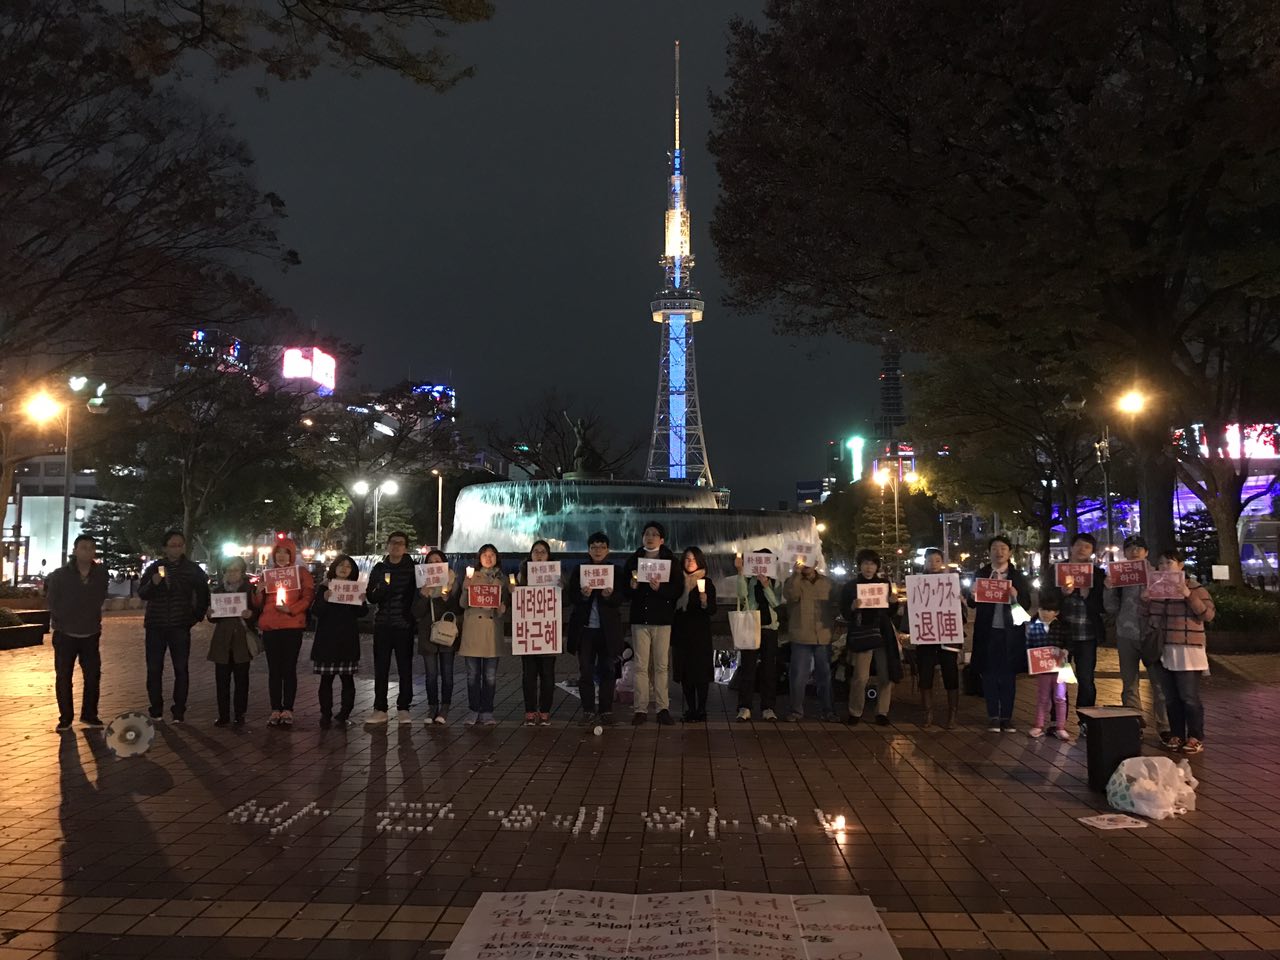 박근혜 퇴진을 요구하는 일본 나고야 거주 교민들. 나고야의 중심가인 사카에에서 열렸다. 뒷쪽에는 나고야의 상징물인 텔레비젼 탑.